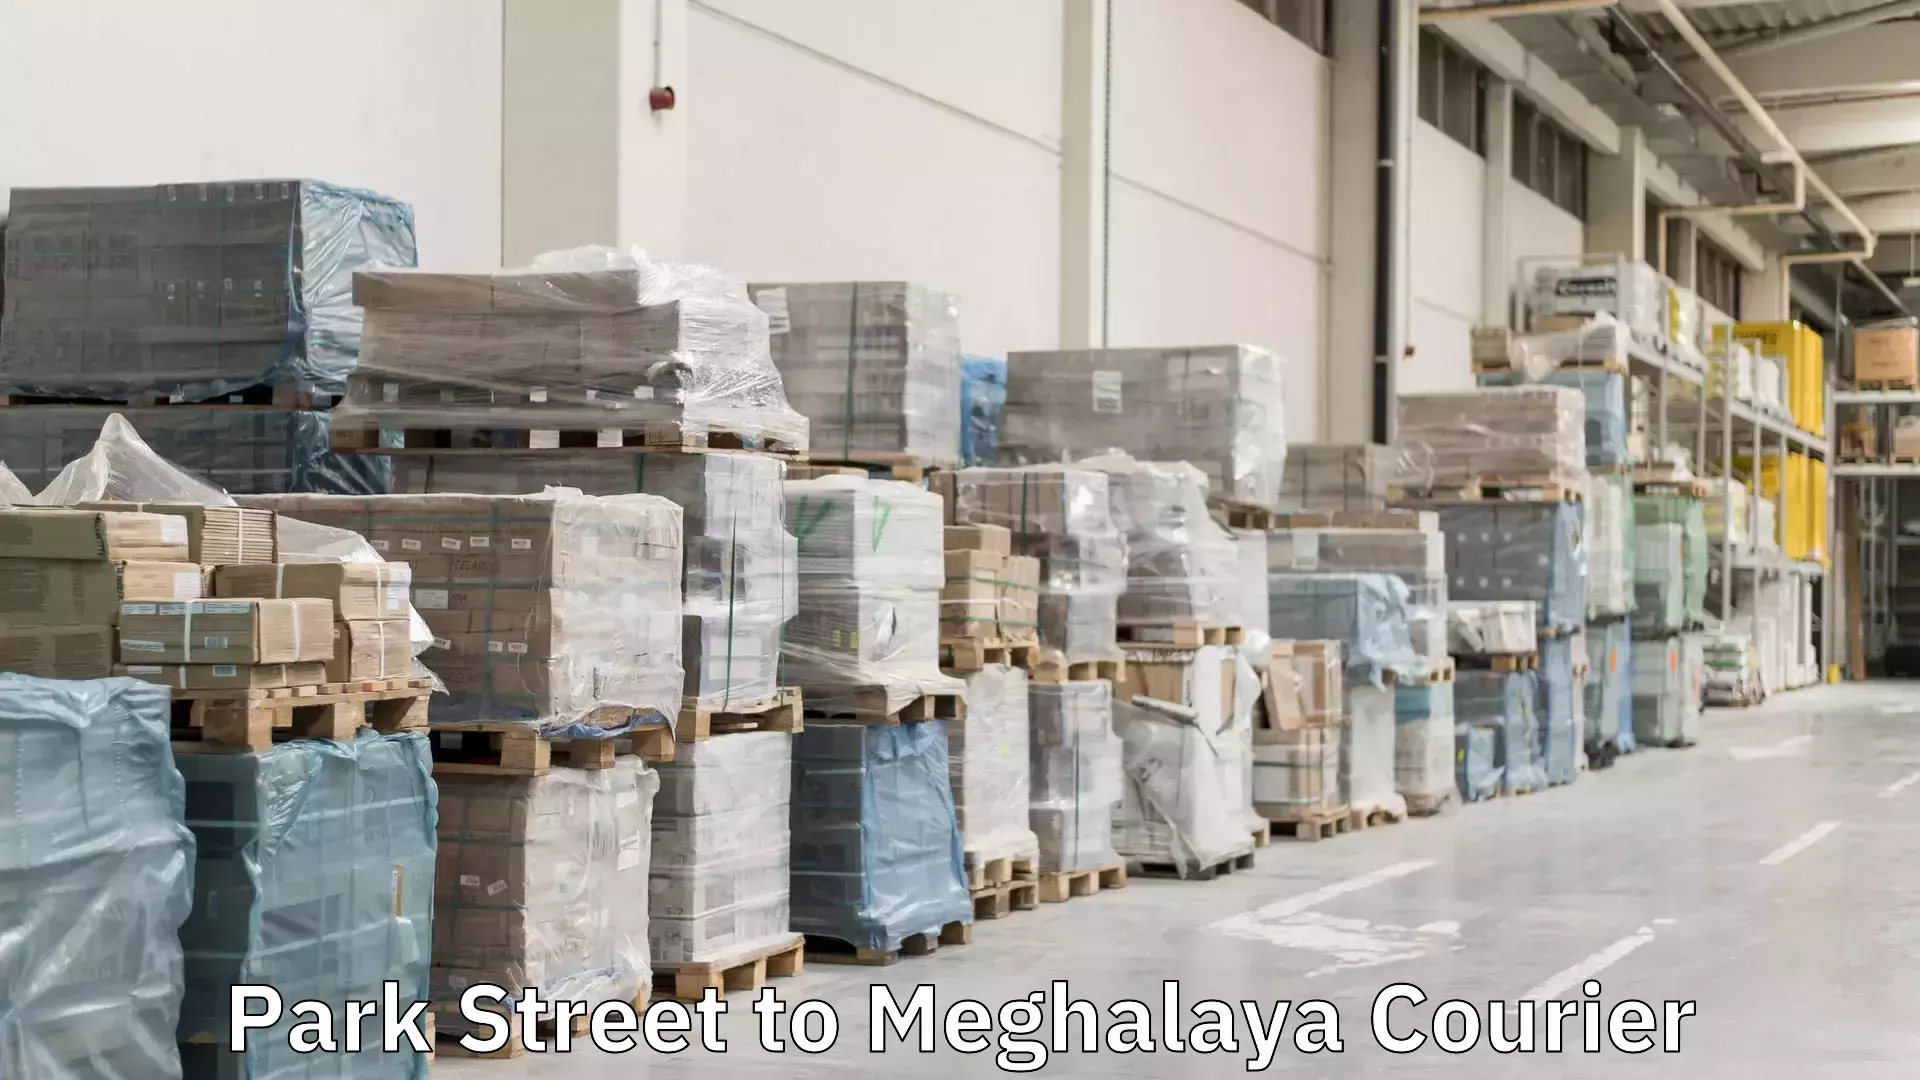 Delivery service partnership Park Street to Meghalaya